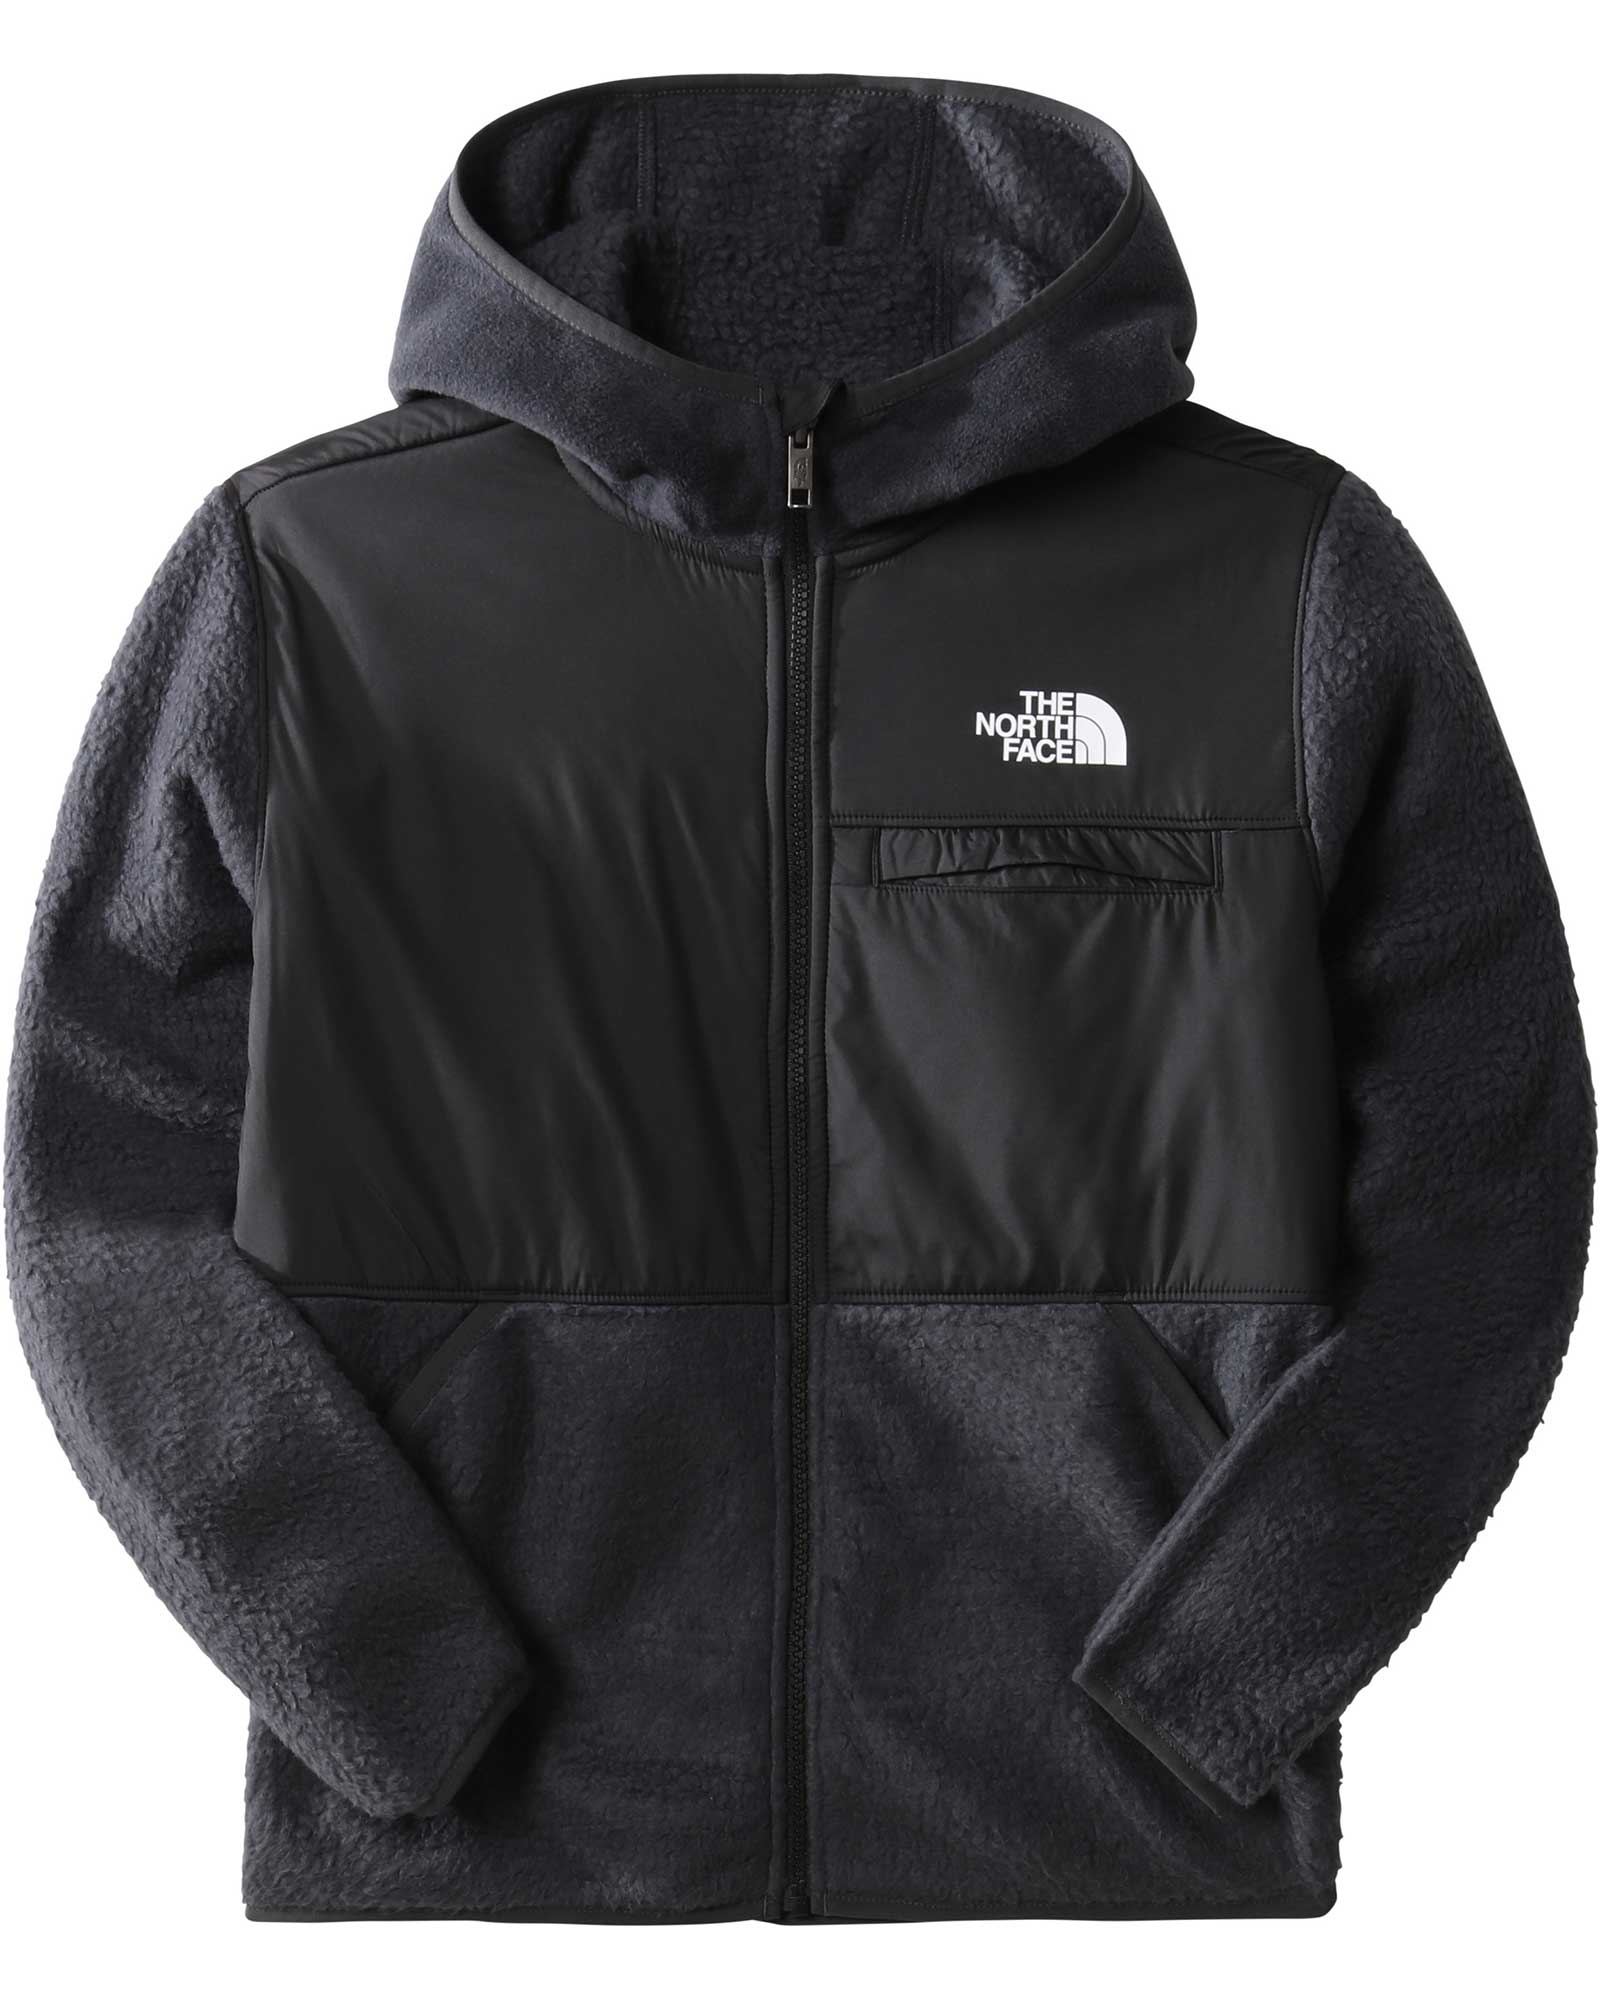 The North Face Forrest Kids’ Fleece Full Zip Hooded Jacket - Asphalt Grey M